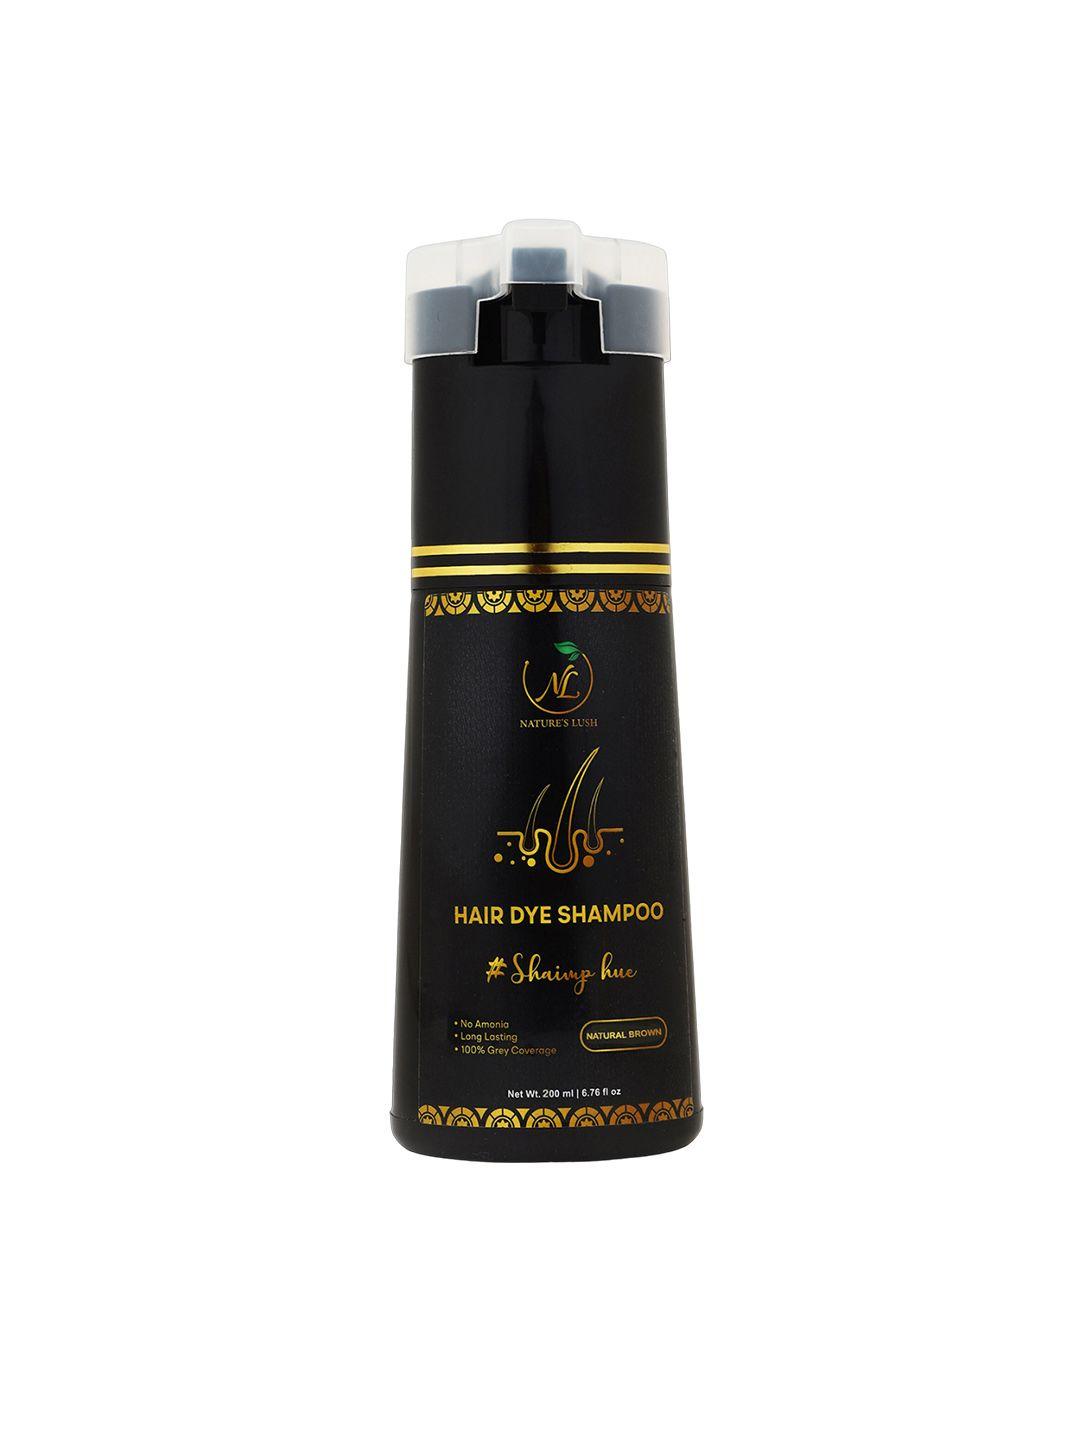 nature's lush shaimp hue no ammonia hair dye shampoo with almond oil 400ml - natural brown